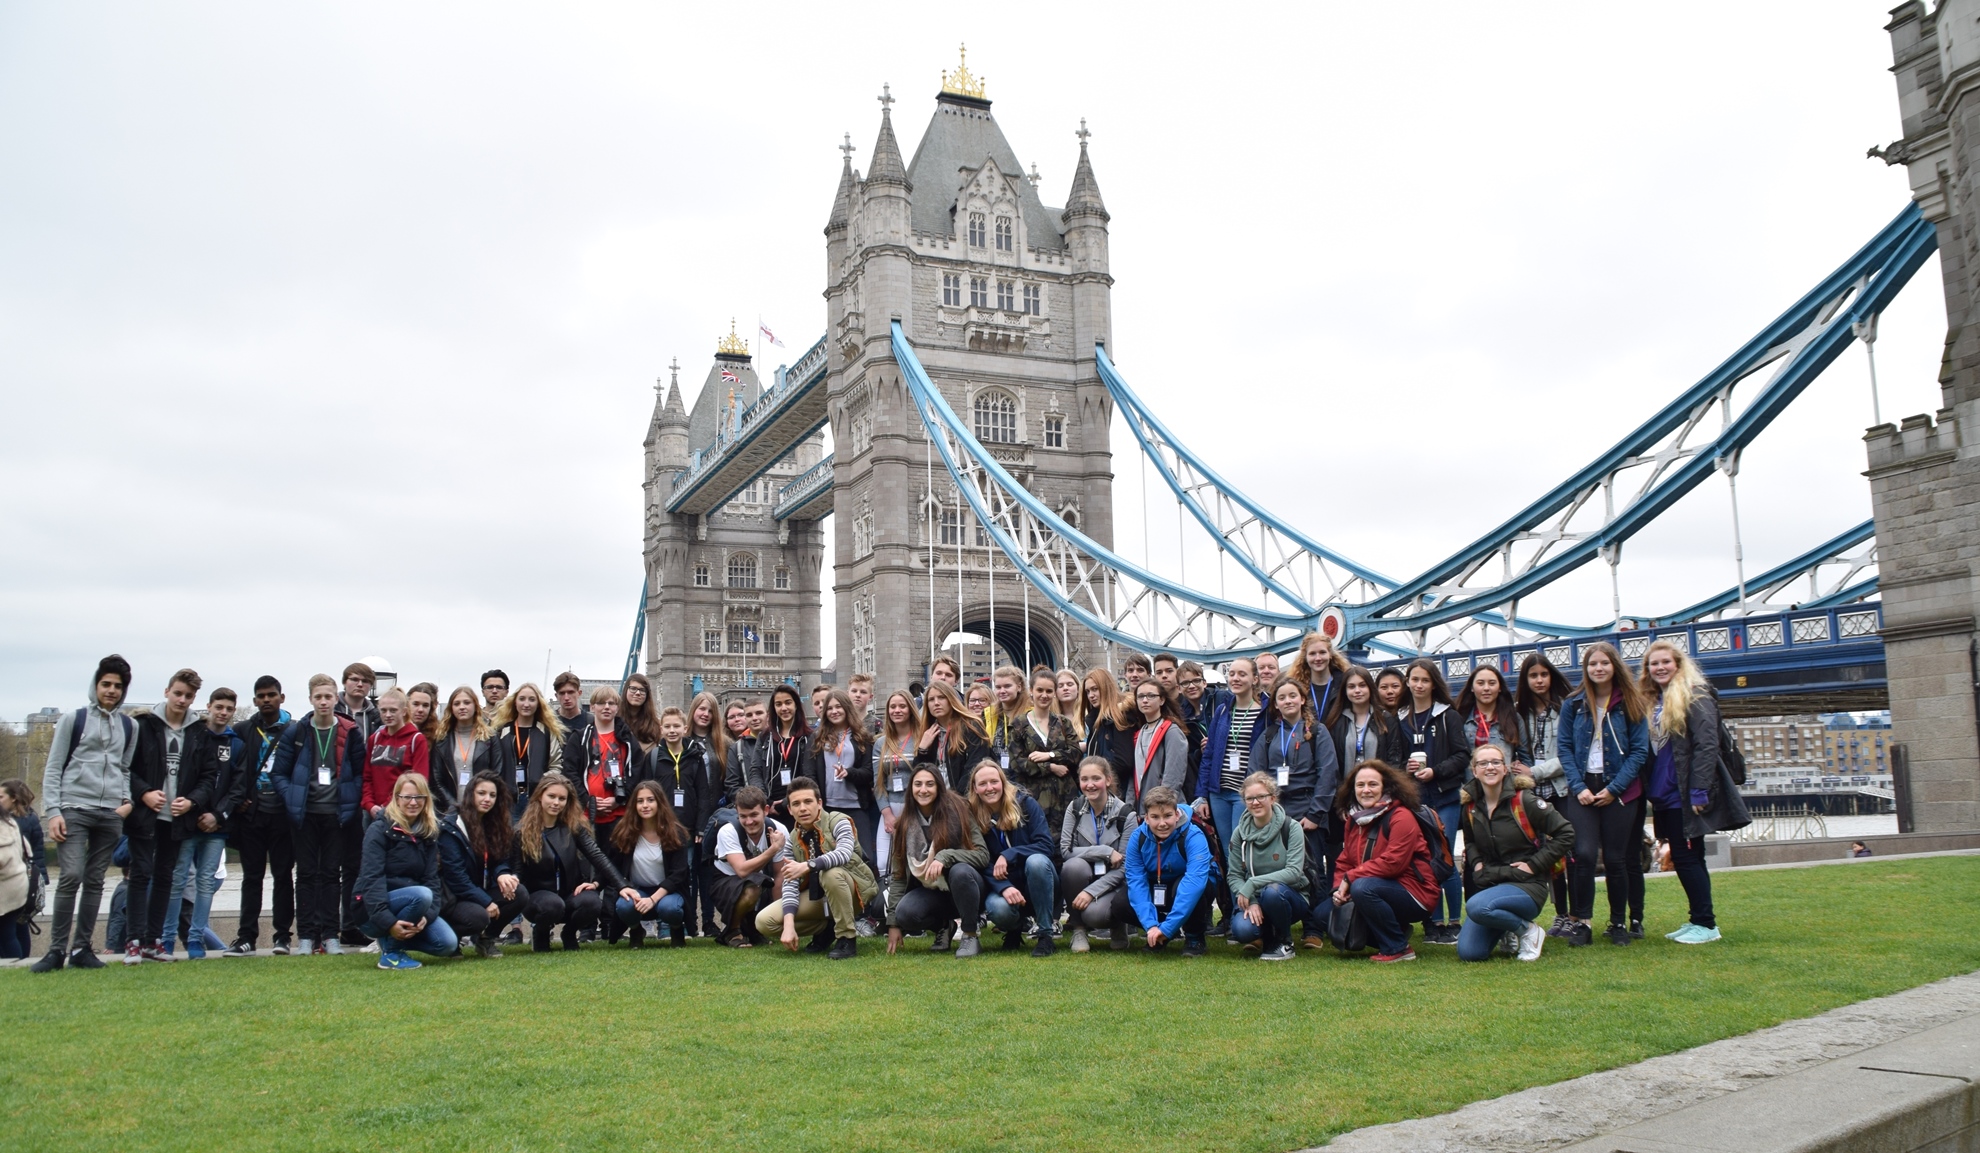 Gruppenfoto vor der Tower Bridge